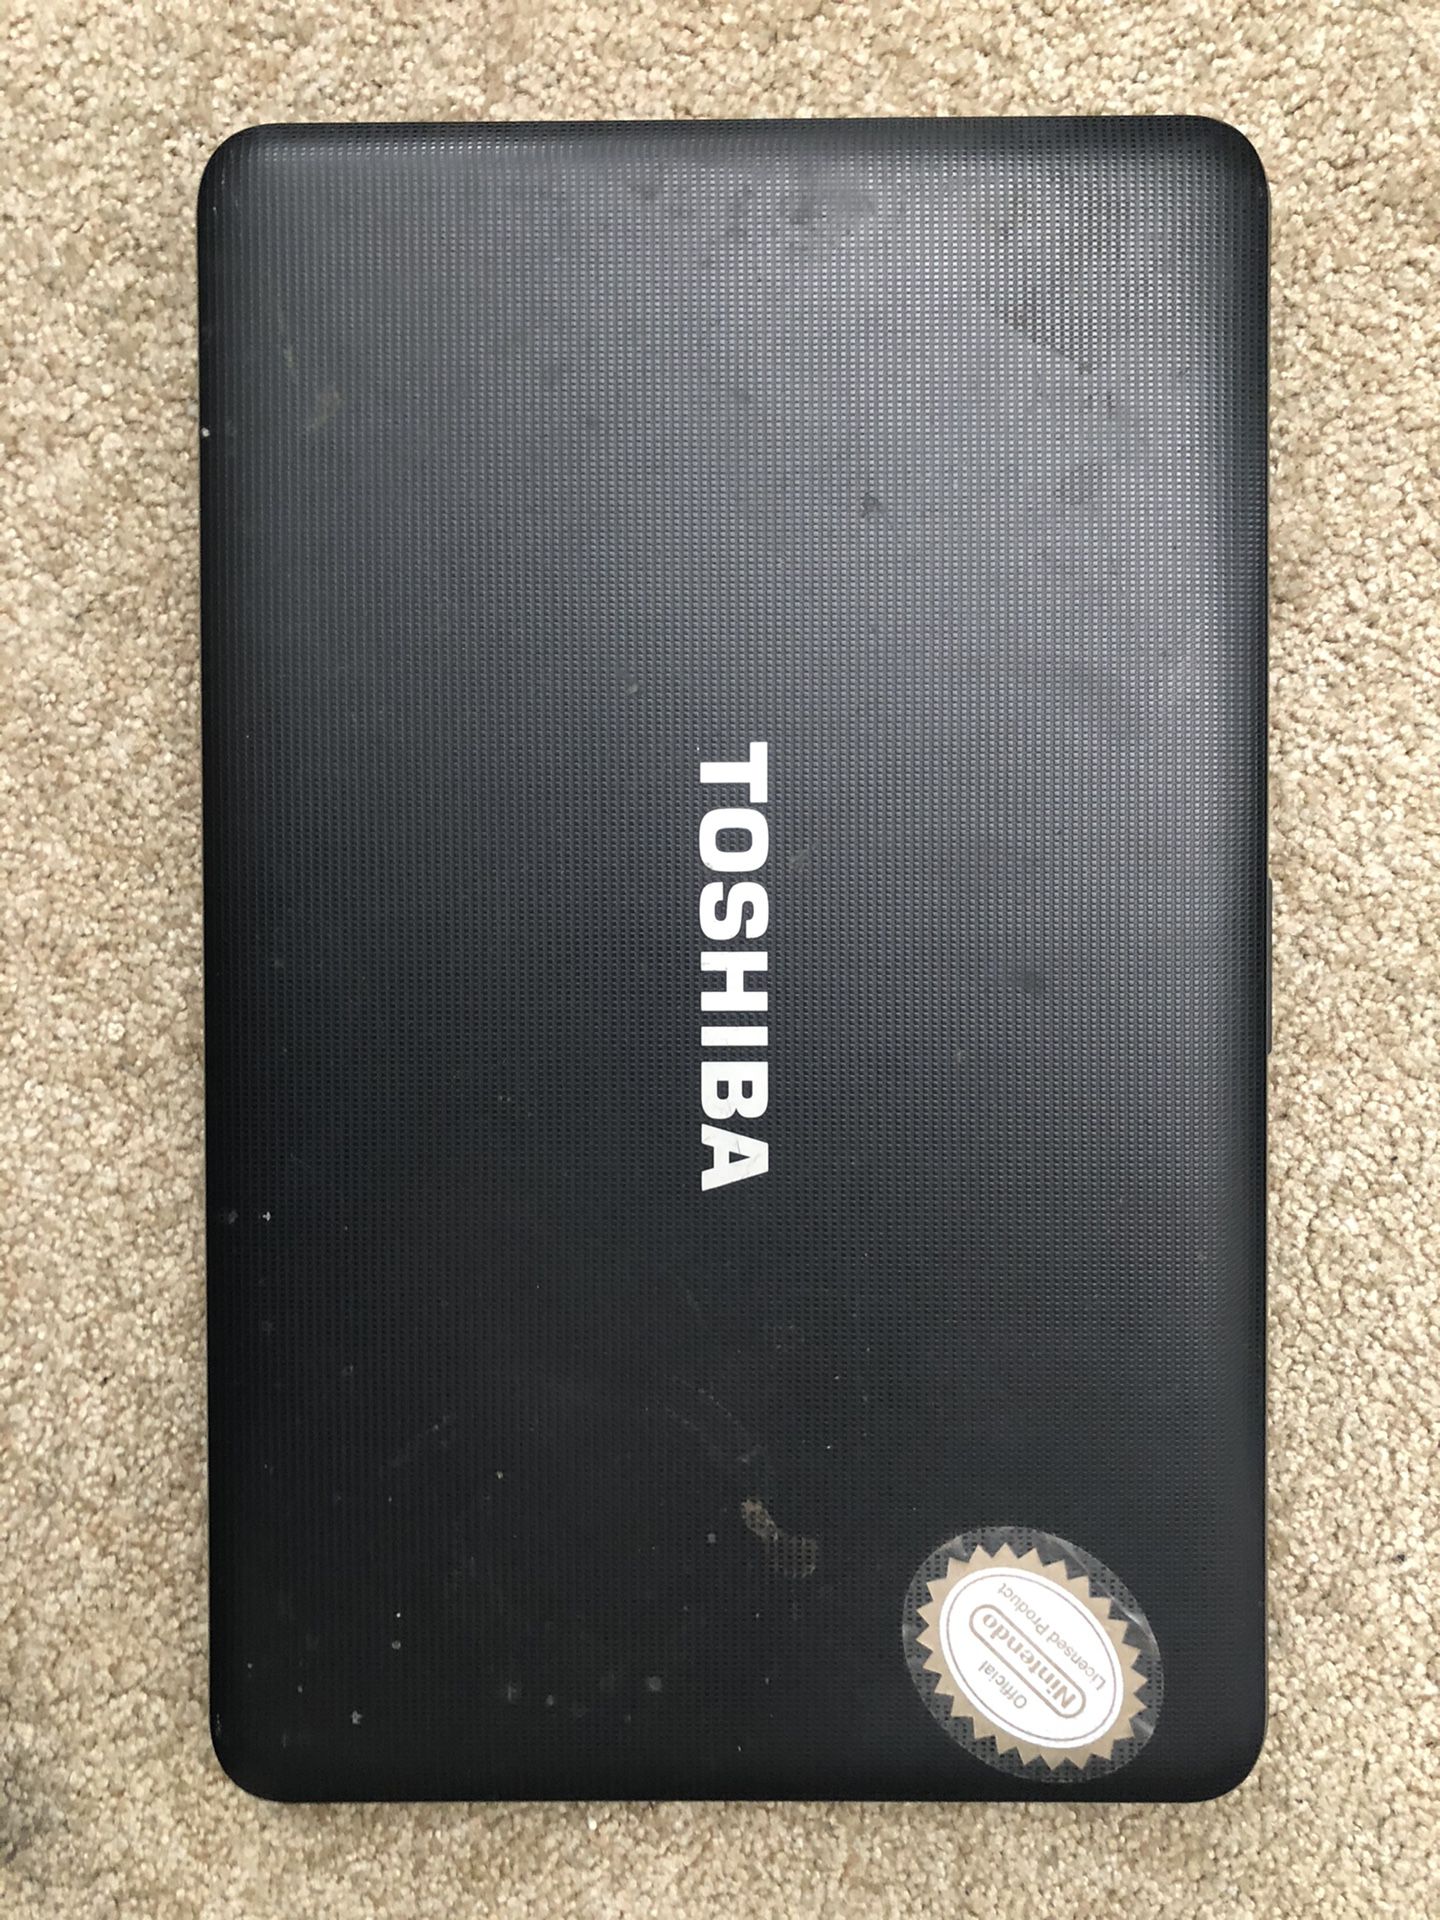 Toshiba Laptop with Bag